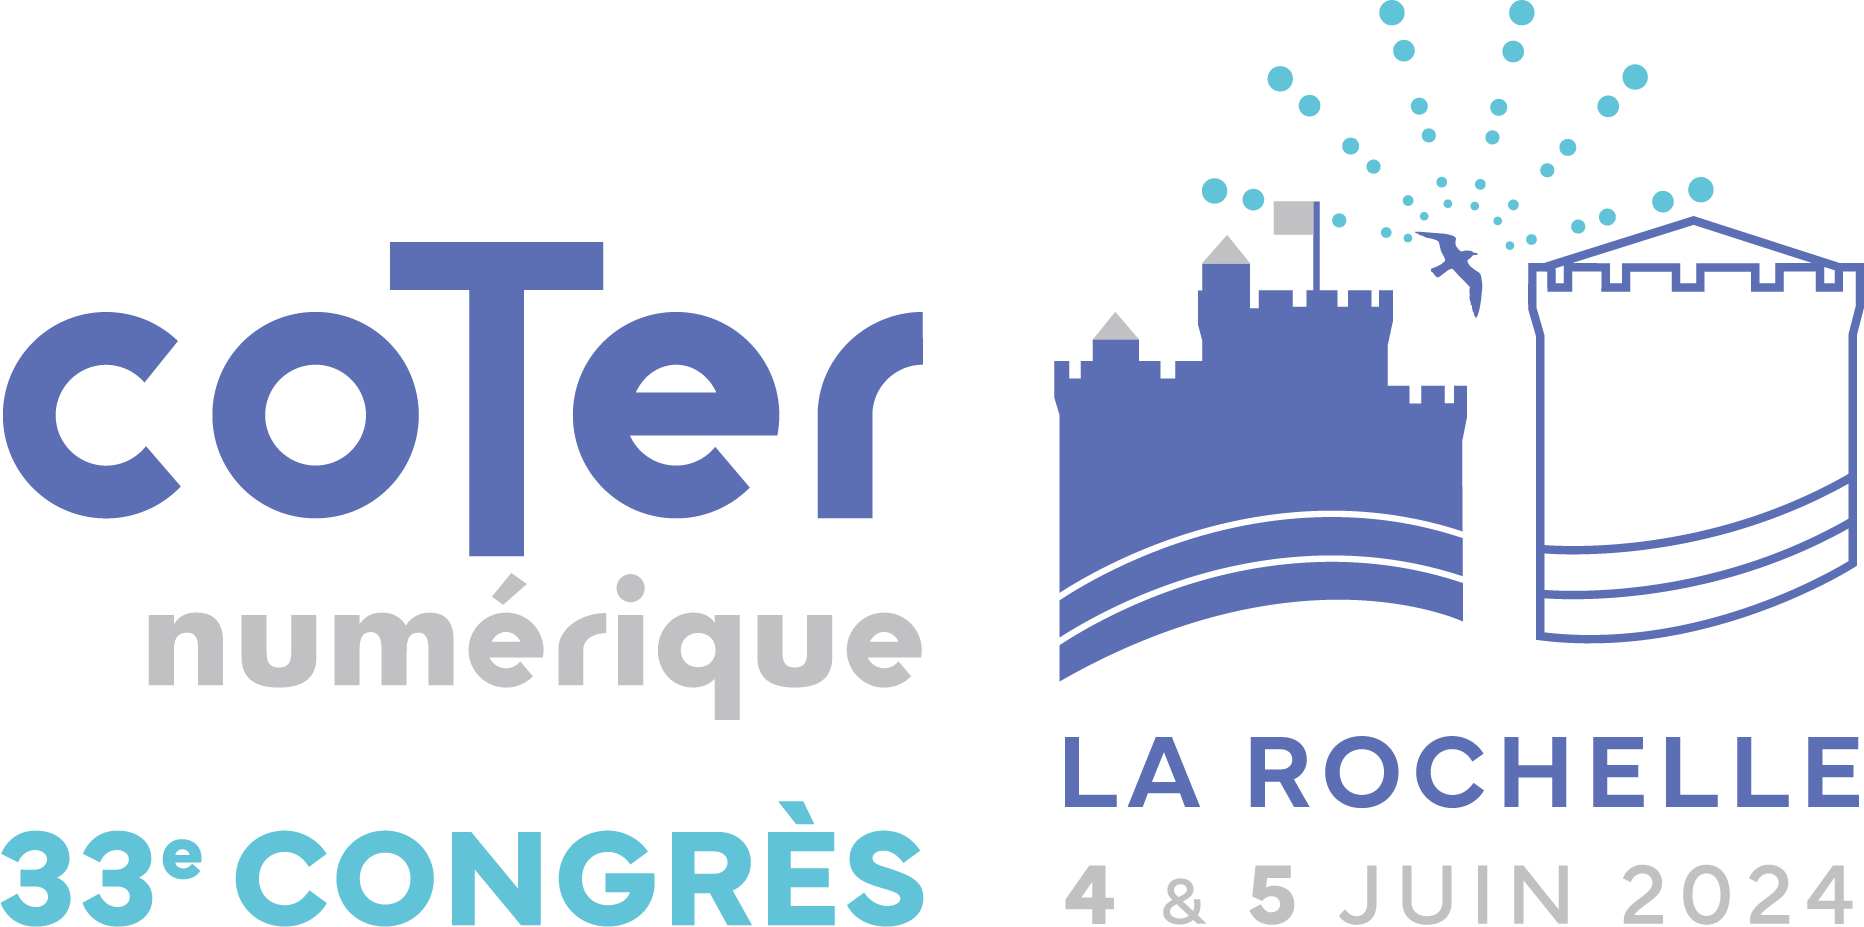 Ceci est le logo du Congrès Coter Numérique de La Rochelle du 4 et 5 juin 2024.